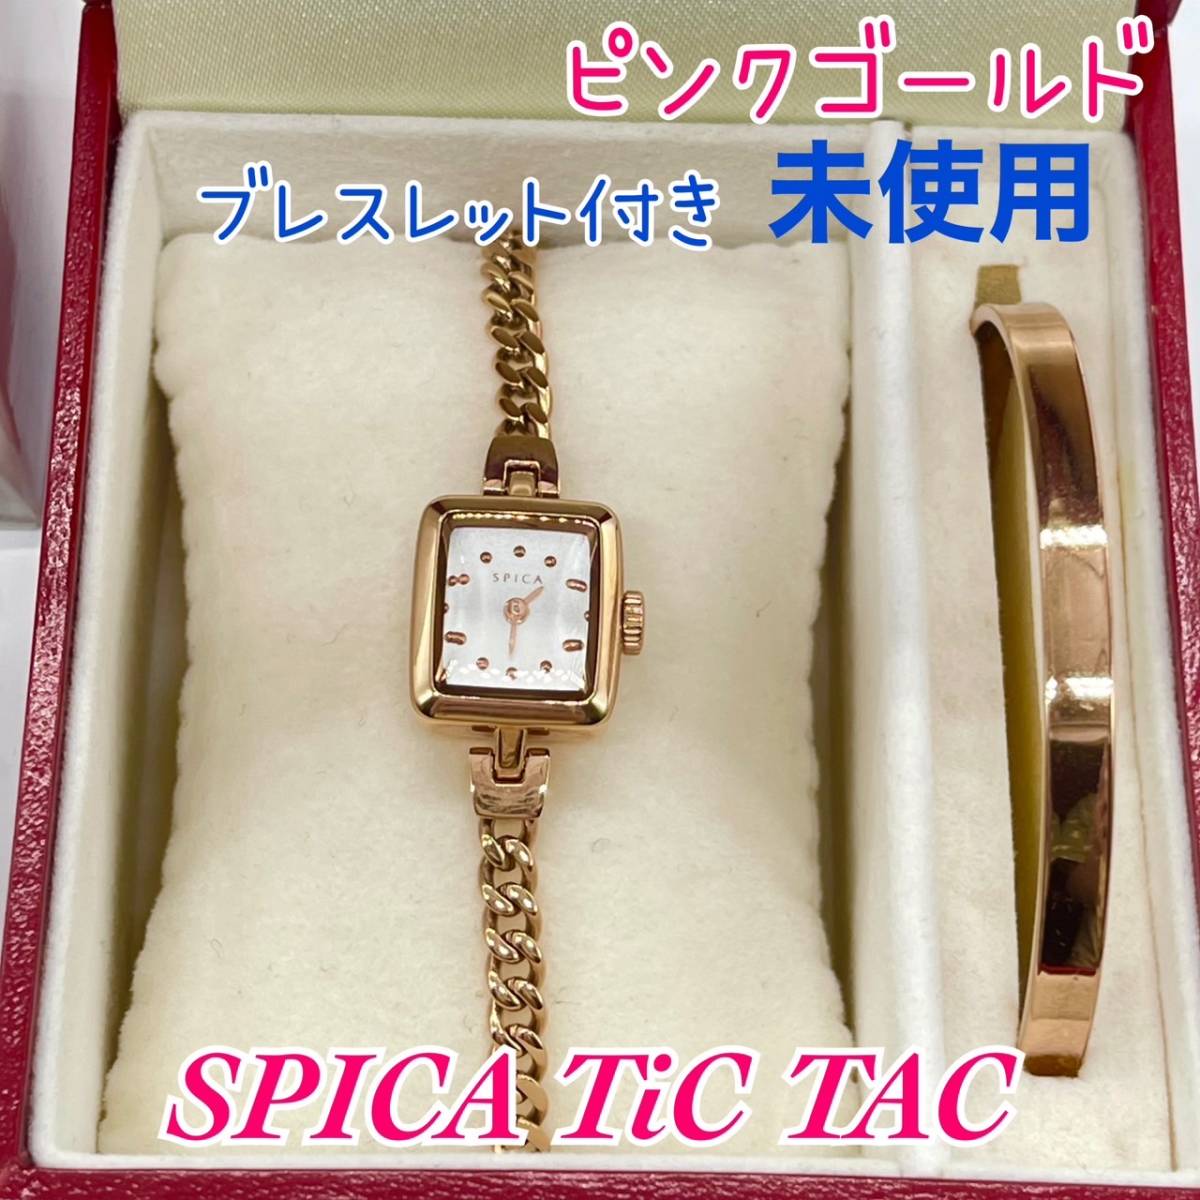 【新品未使用】 TiCTAC SPICA SPI56-PG/SET ピンクゴールド スピカ